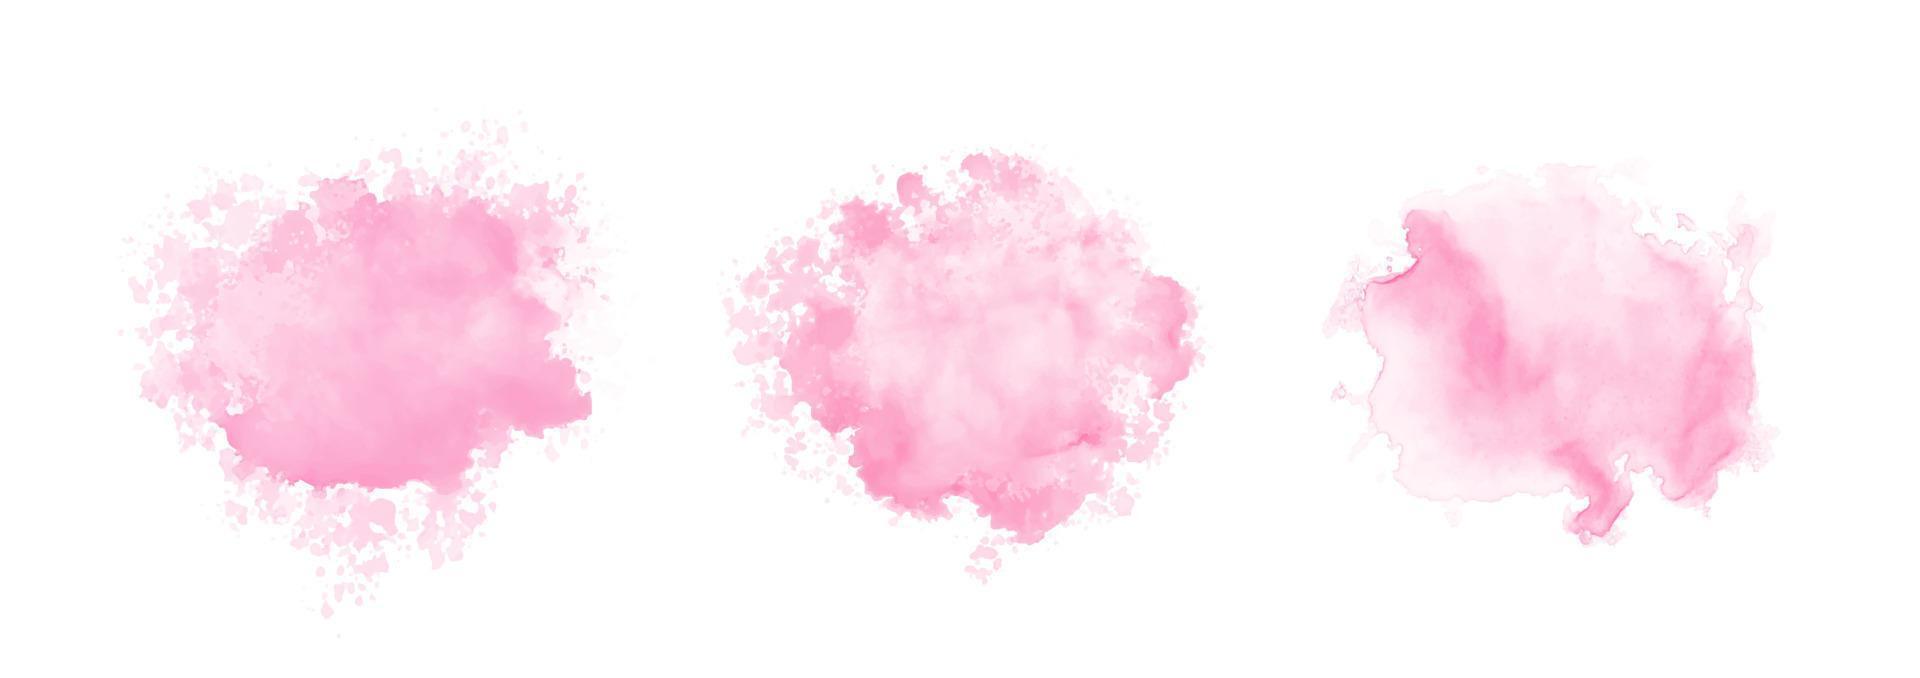 insieme astratto della spruzzata dell'acqua dell'acquerello rosa. struttura dell'acquerello di vettore nel colore rosa